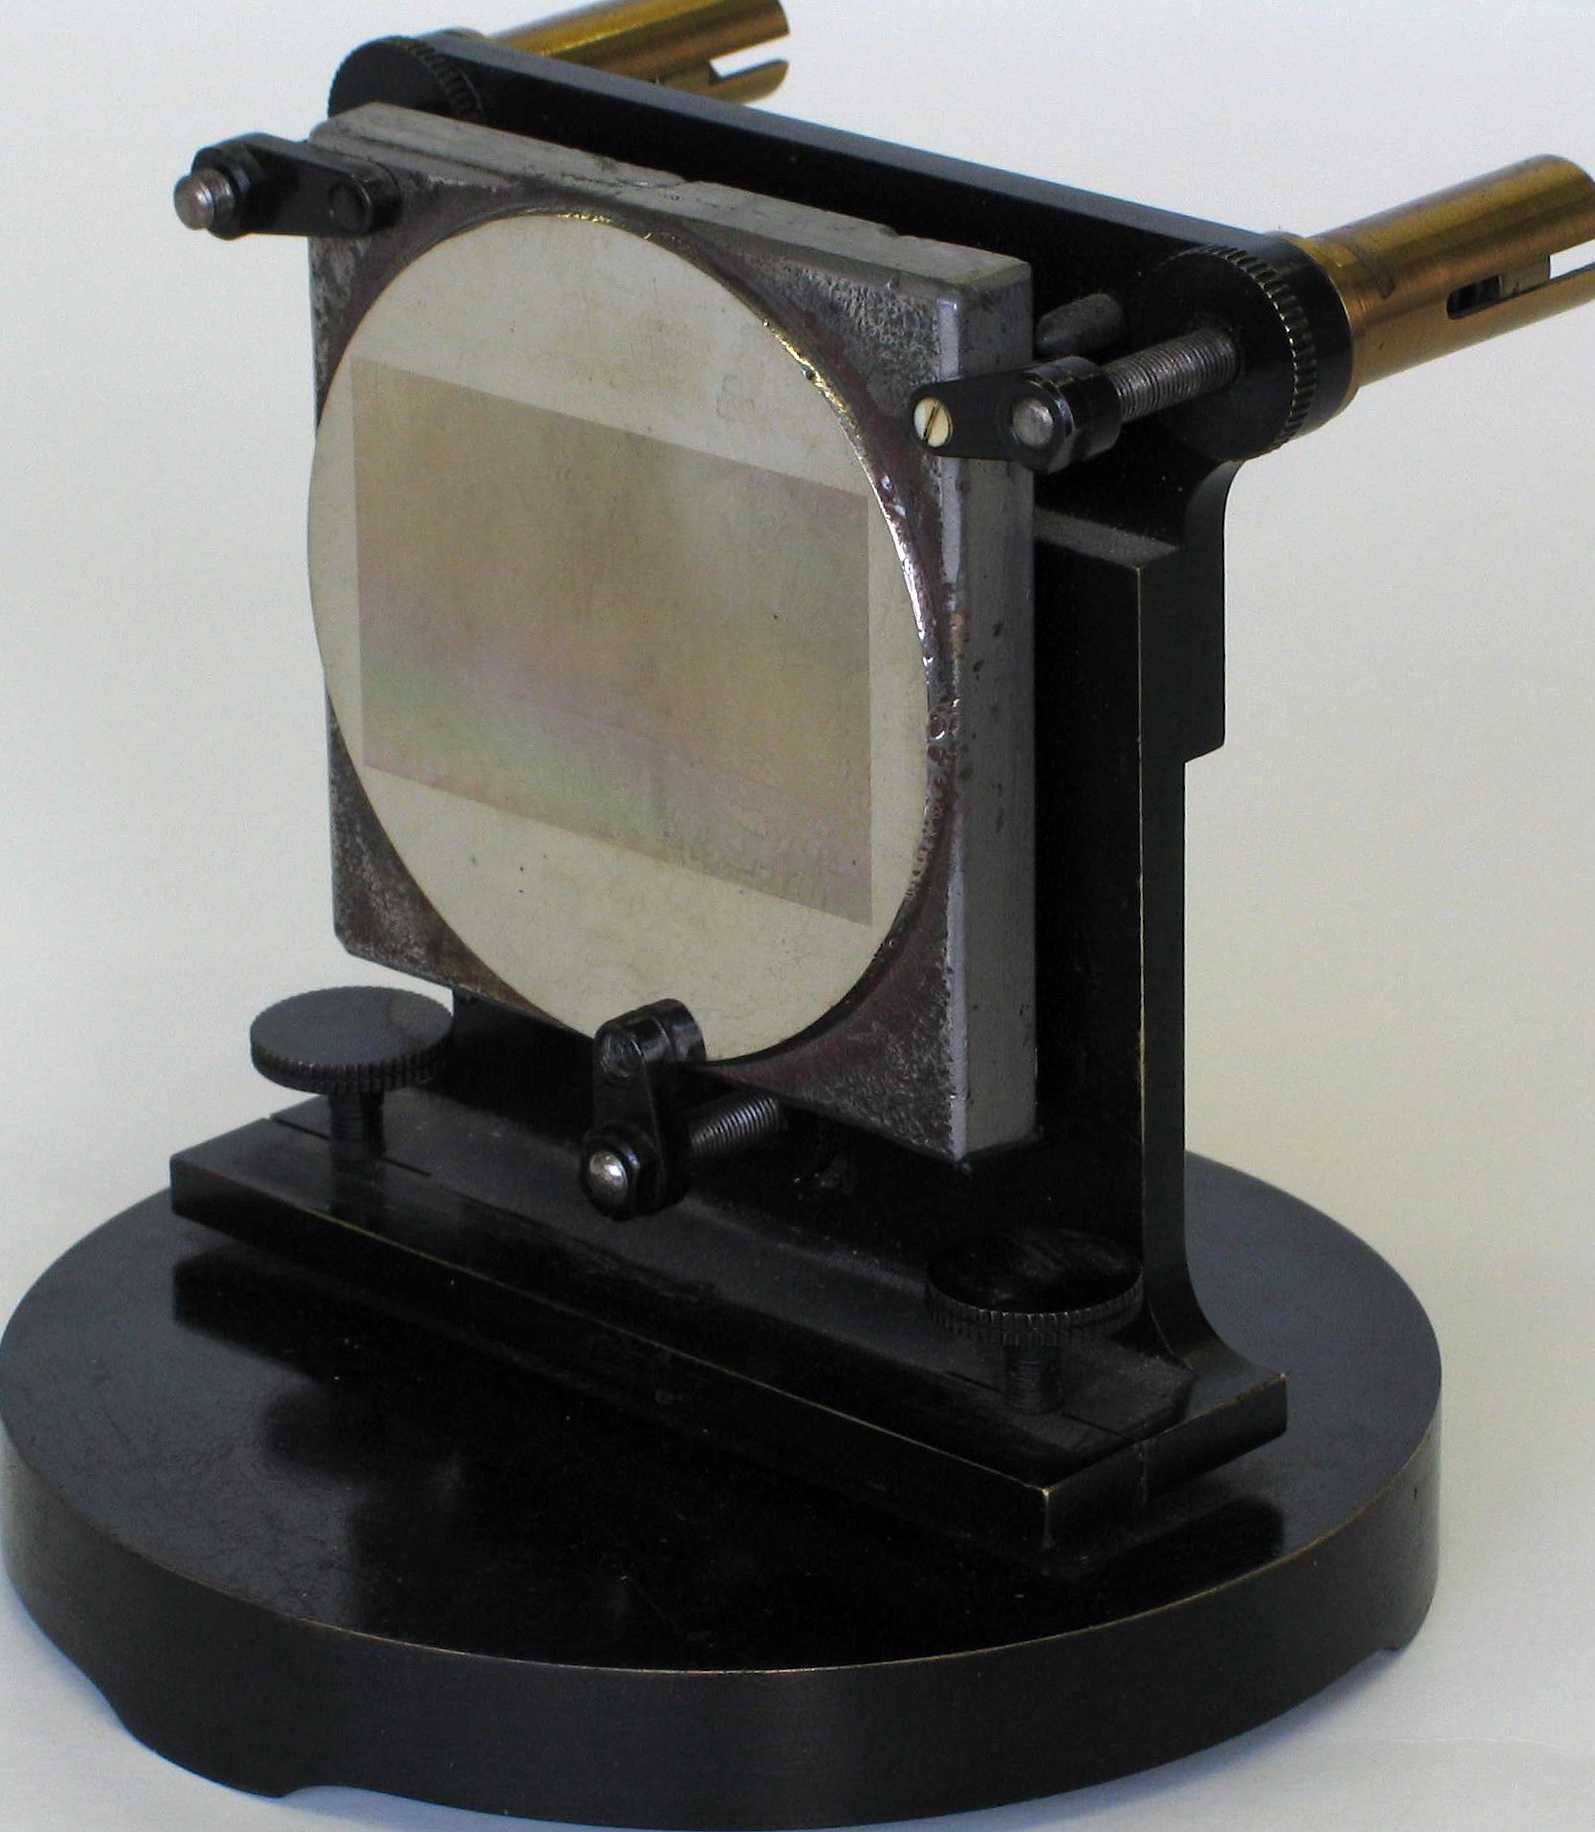 Réseau de diffraction
(métallique)